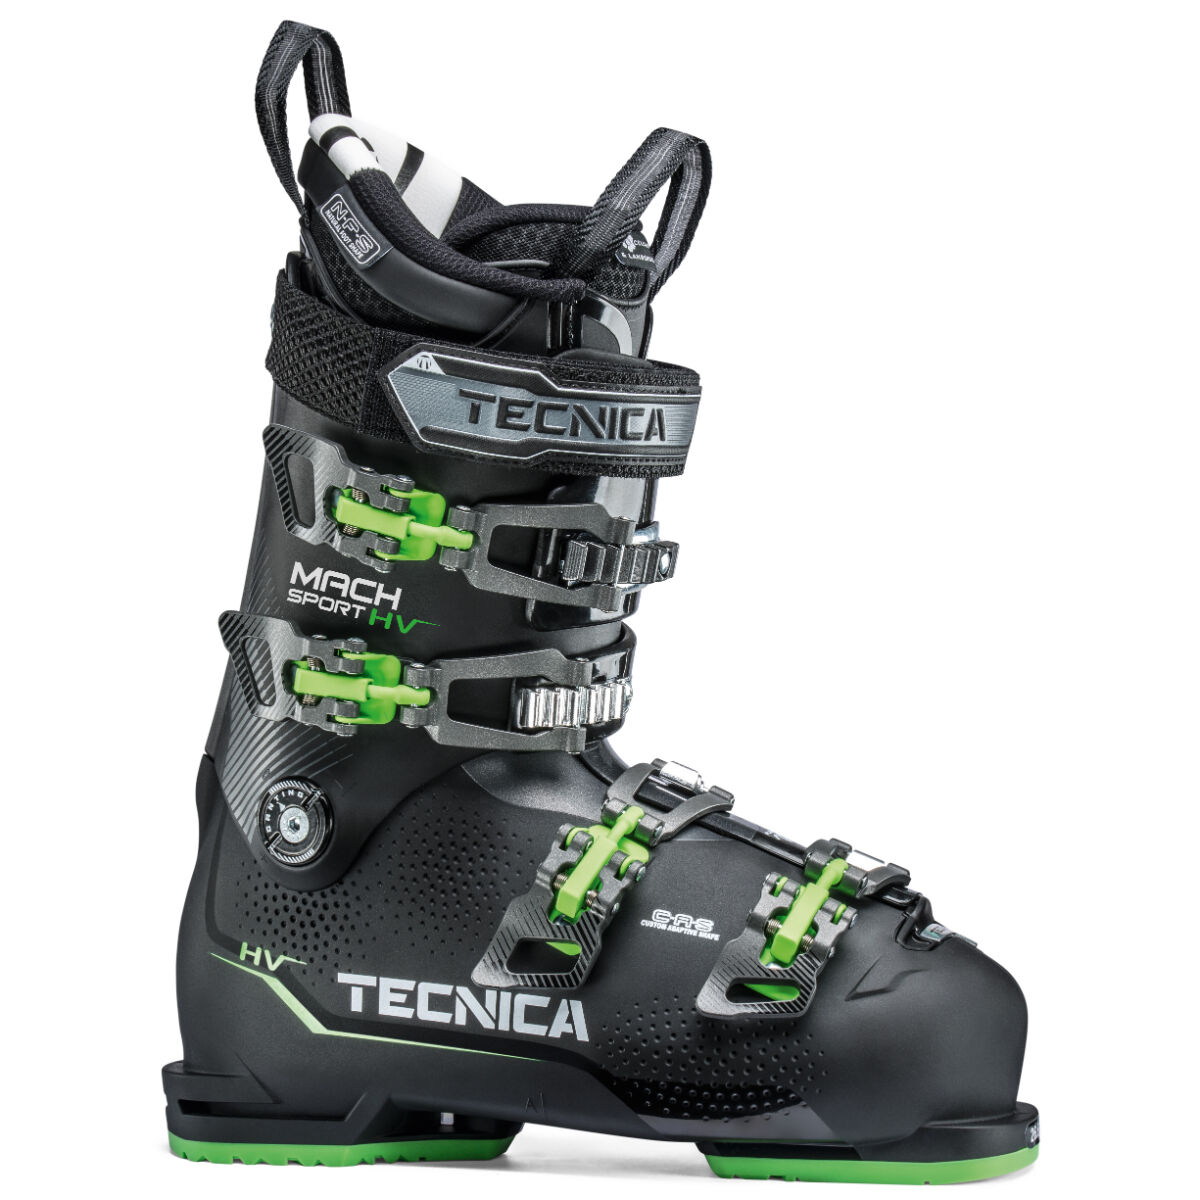 31.5 ski boots